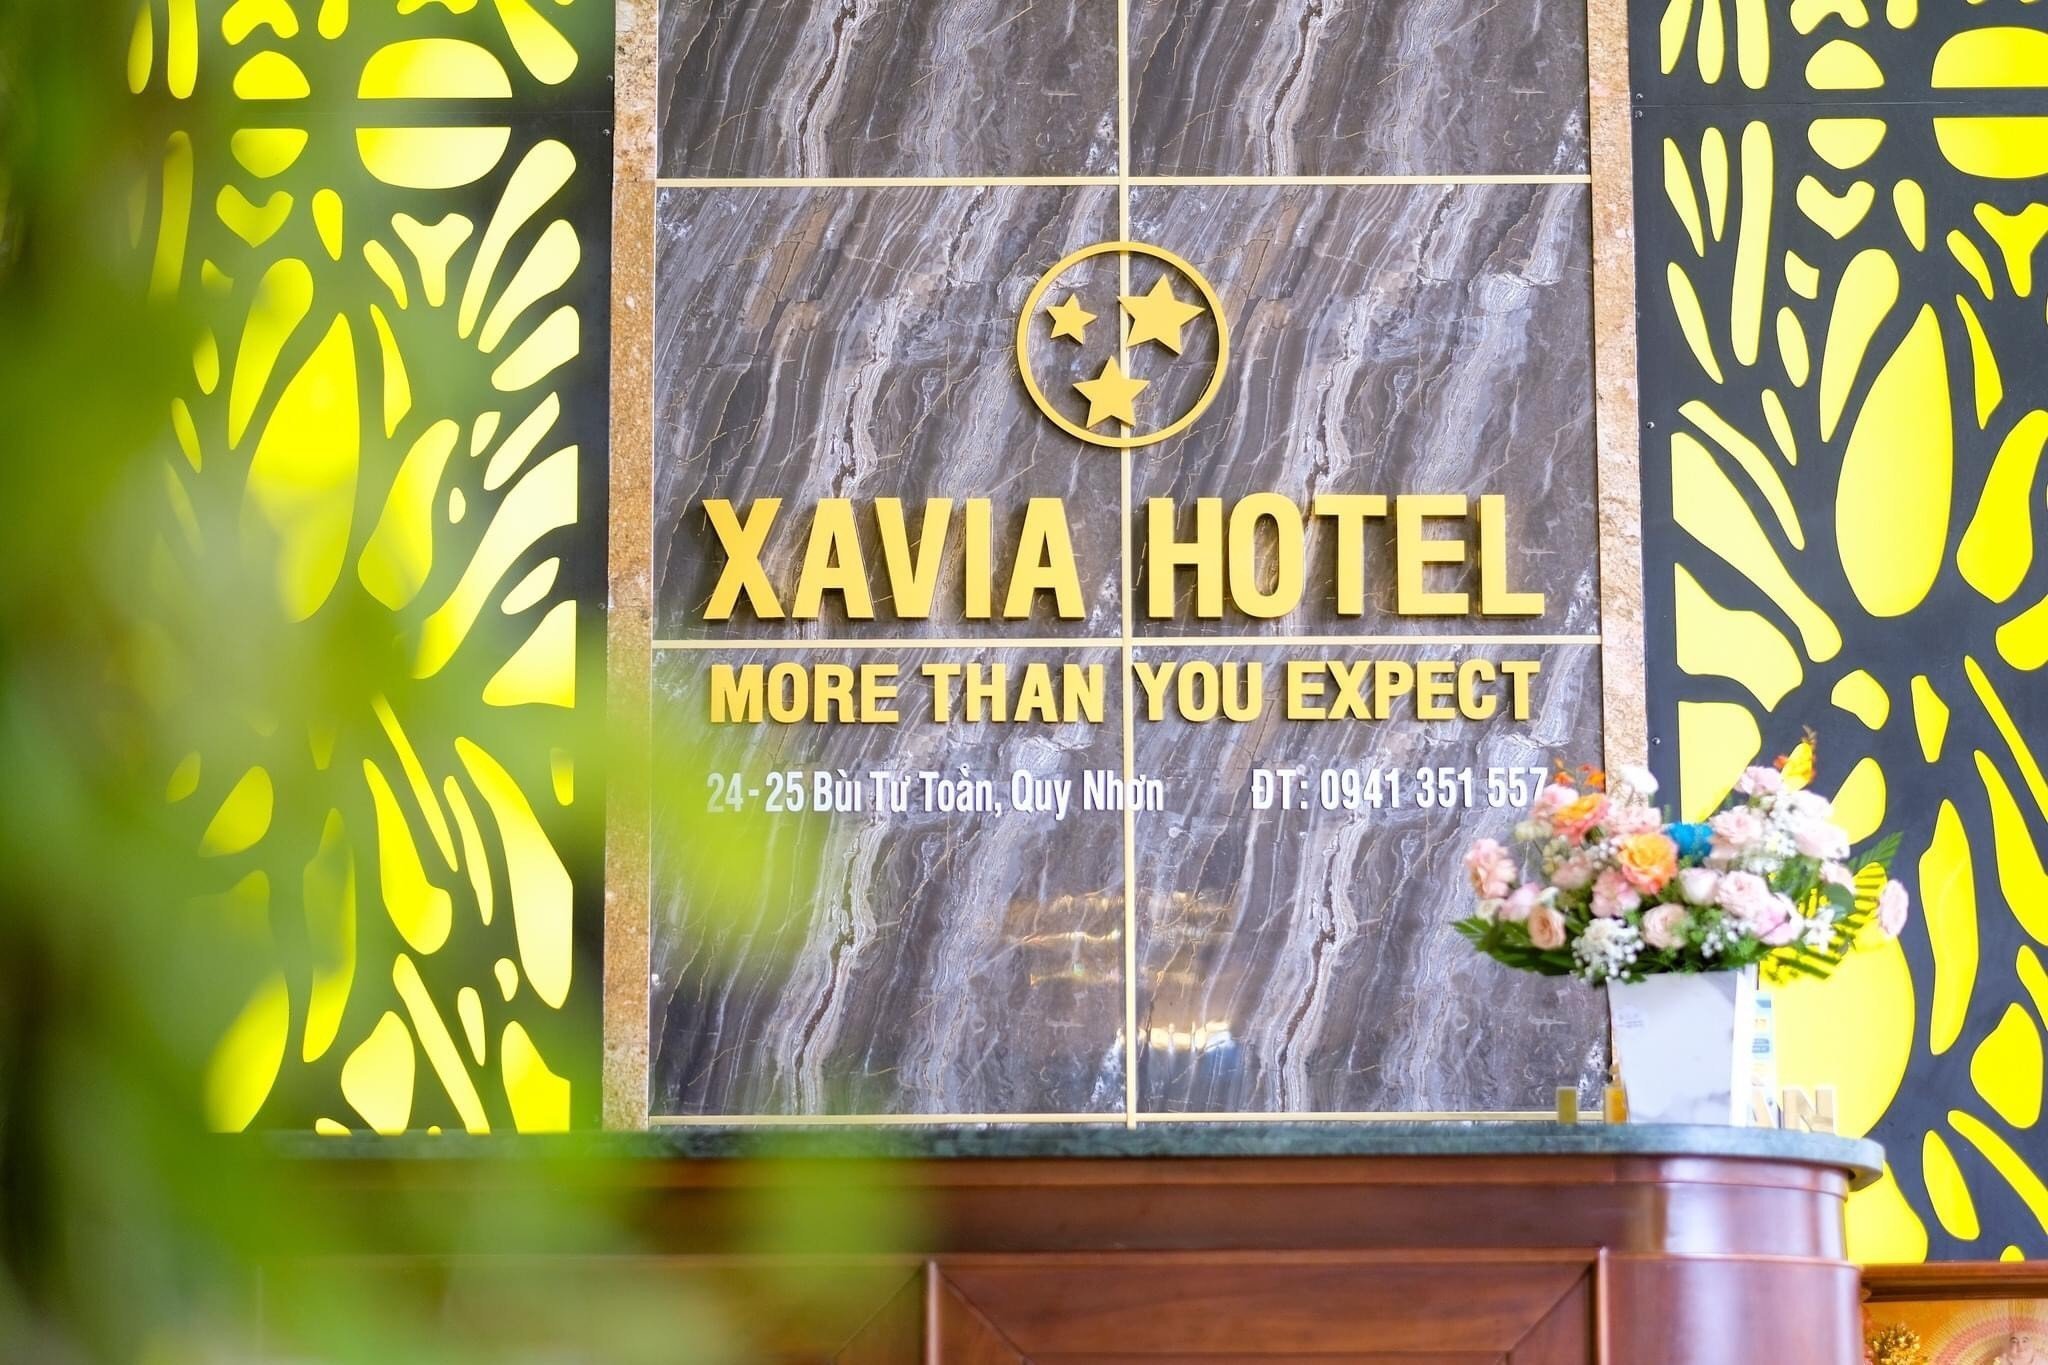 Bảng tên Xavia Hotel